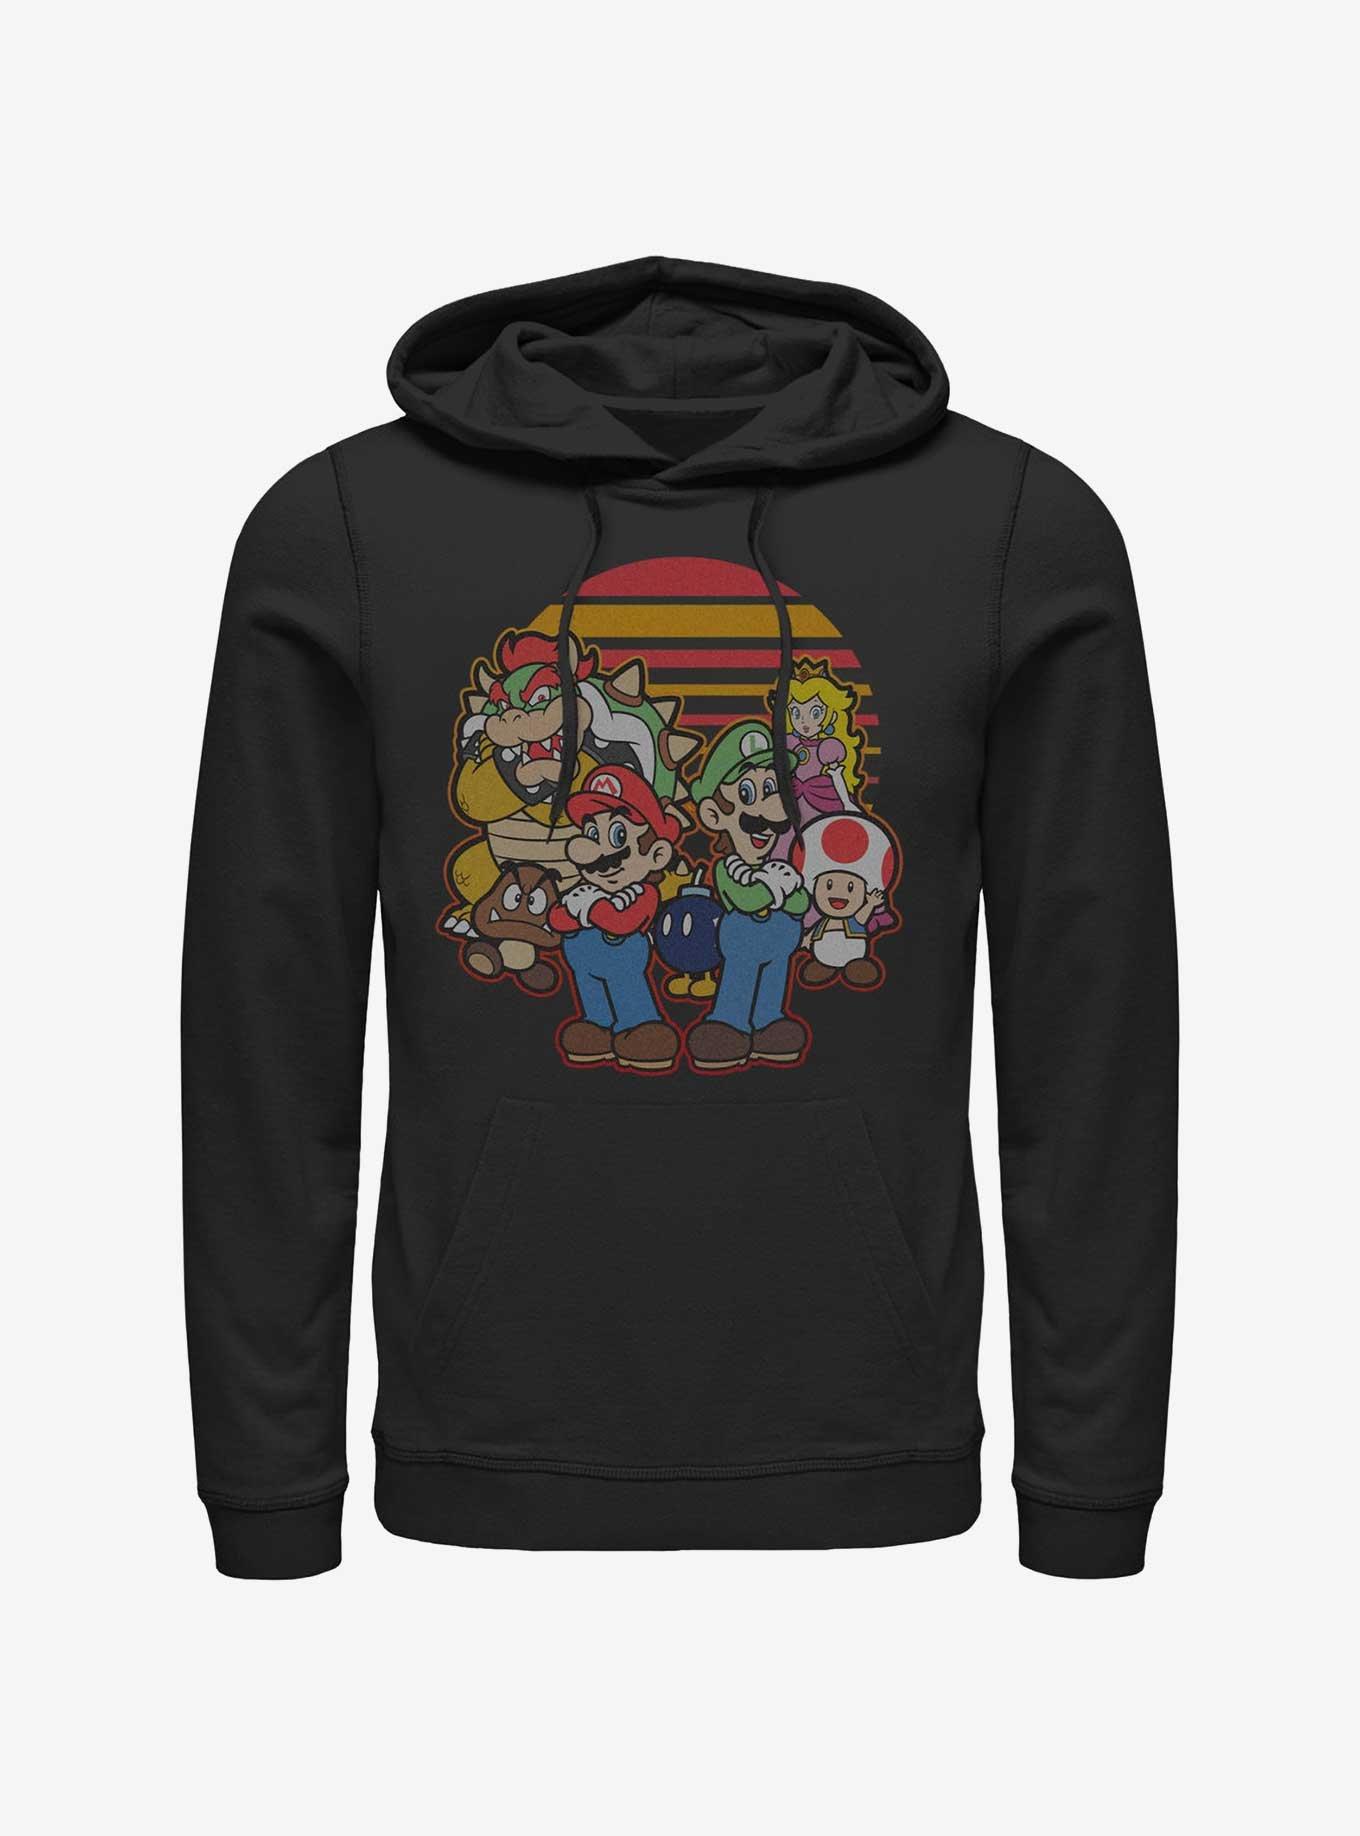 Nintendo Zelda Mario And Friends Hoodie